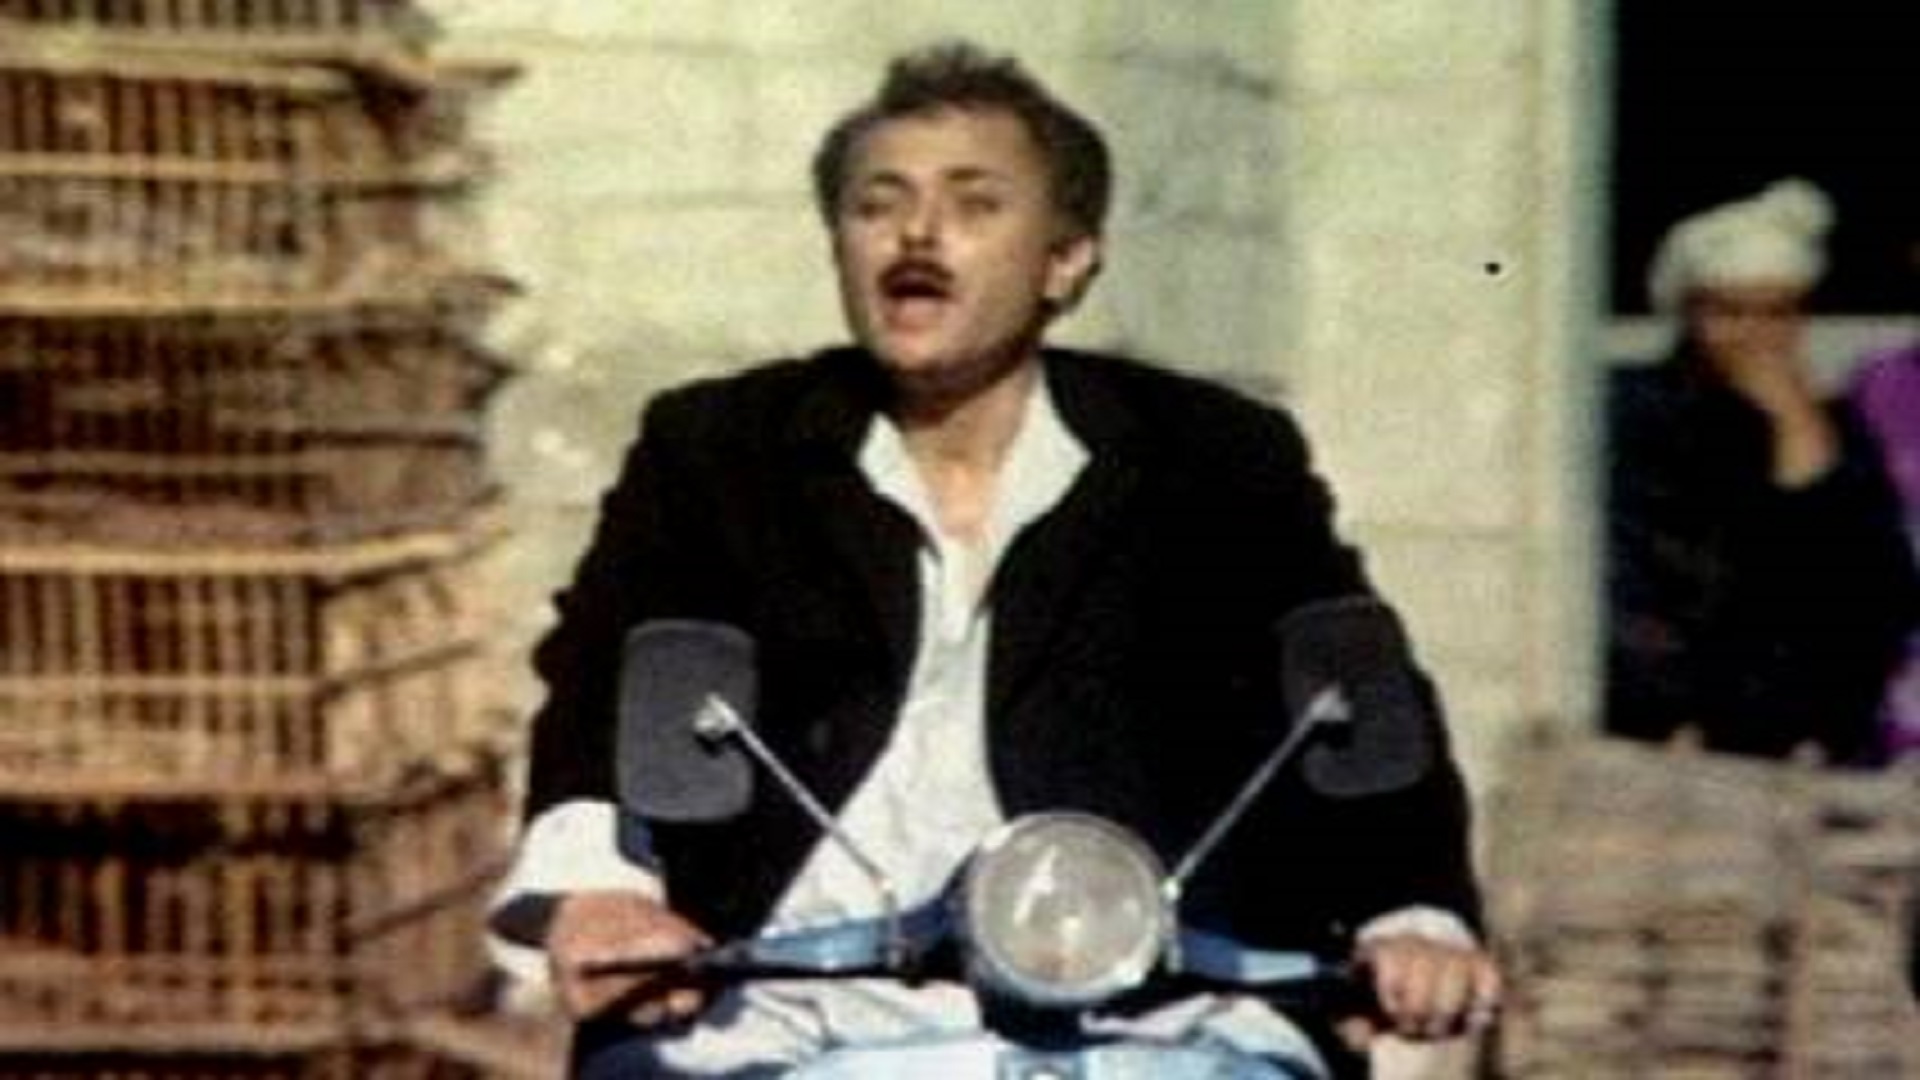 لقطة من فيلم "الكيت كات" ويعتبر واحدا من أفضل الأفلام في تاريخ السينما المصرية